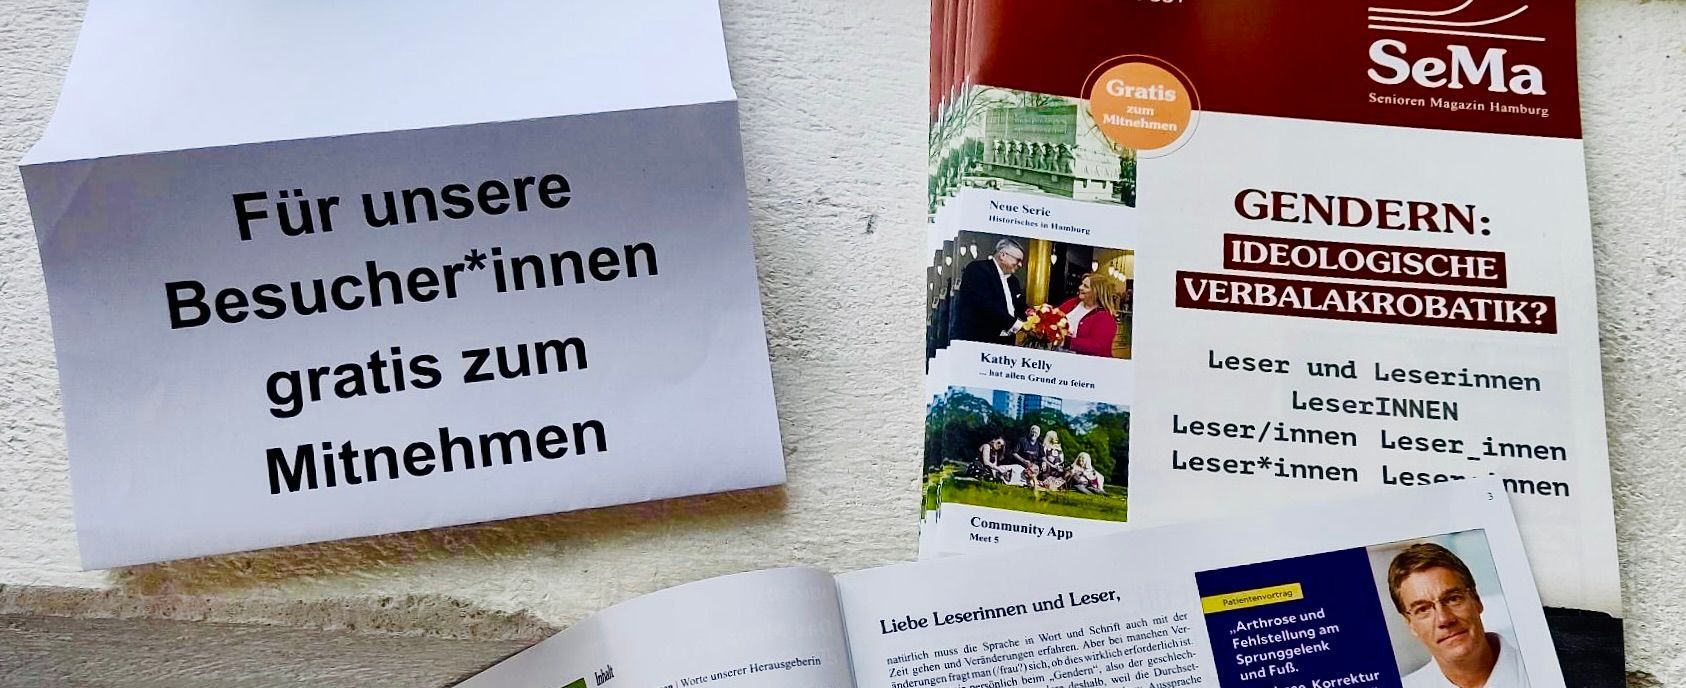 Arbeitsmuseum Hamburg, verschiedene Ansprache, Gendern, gescheitertes Gendern